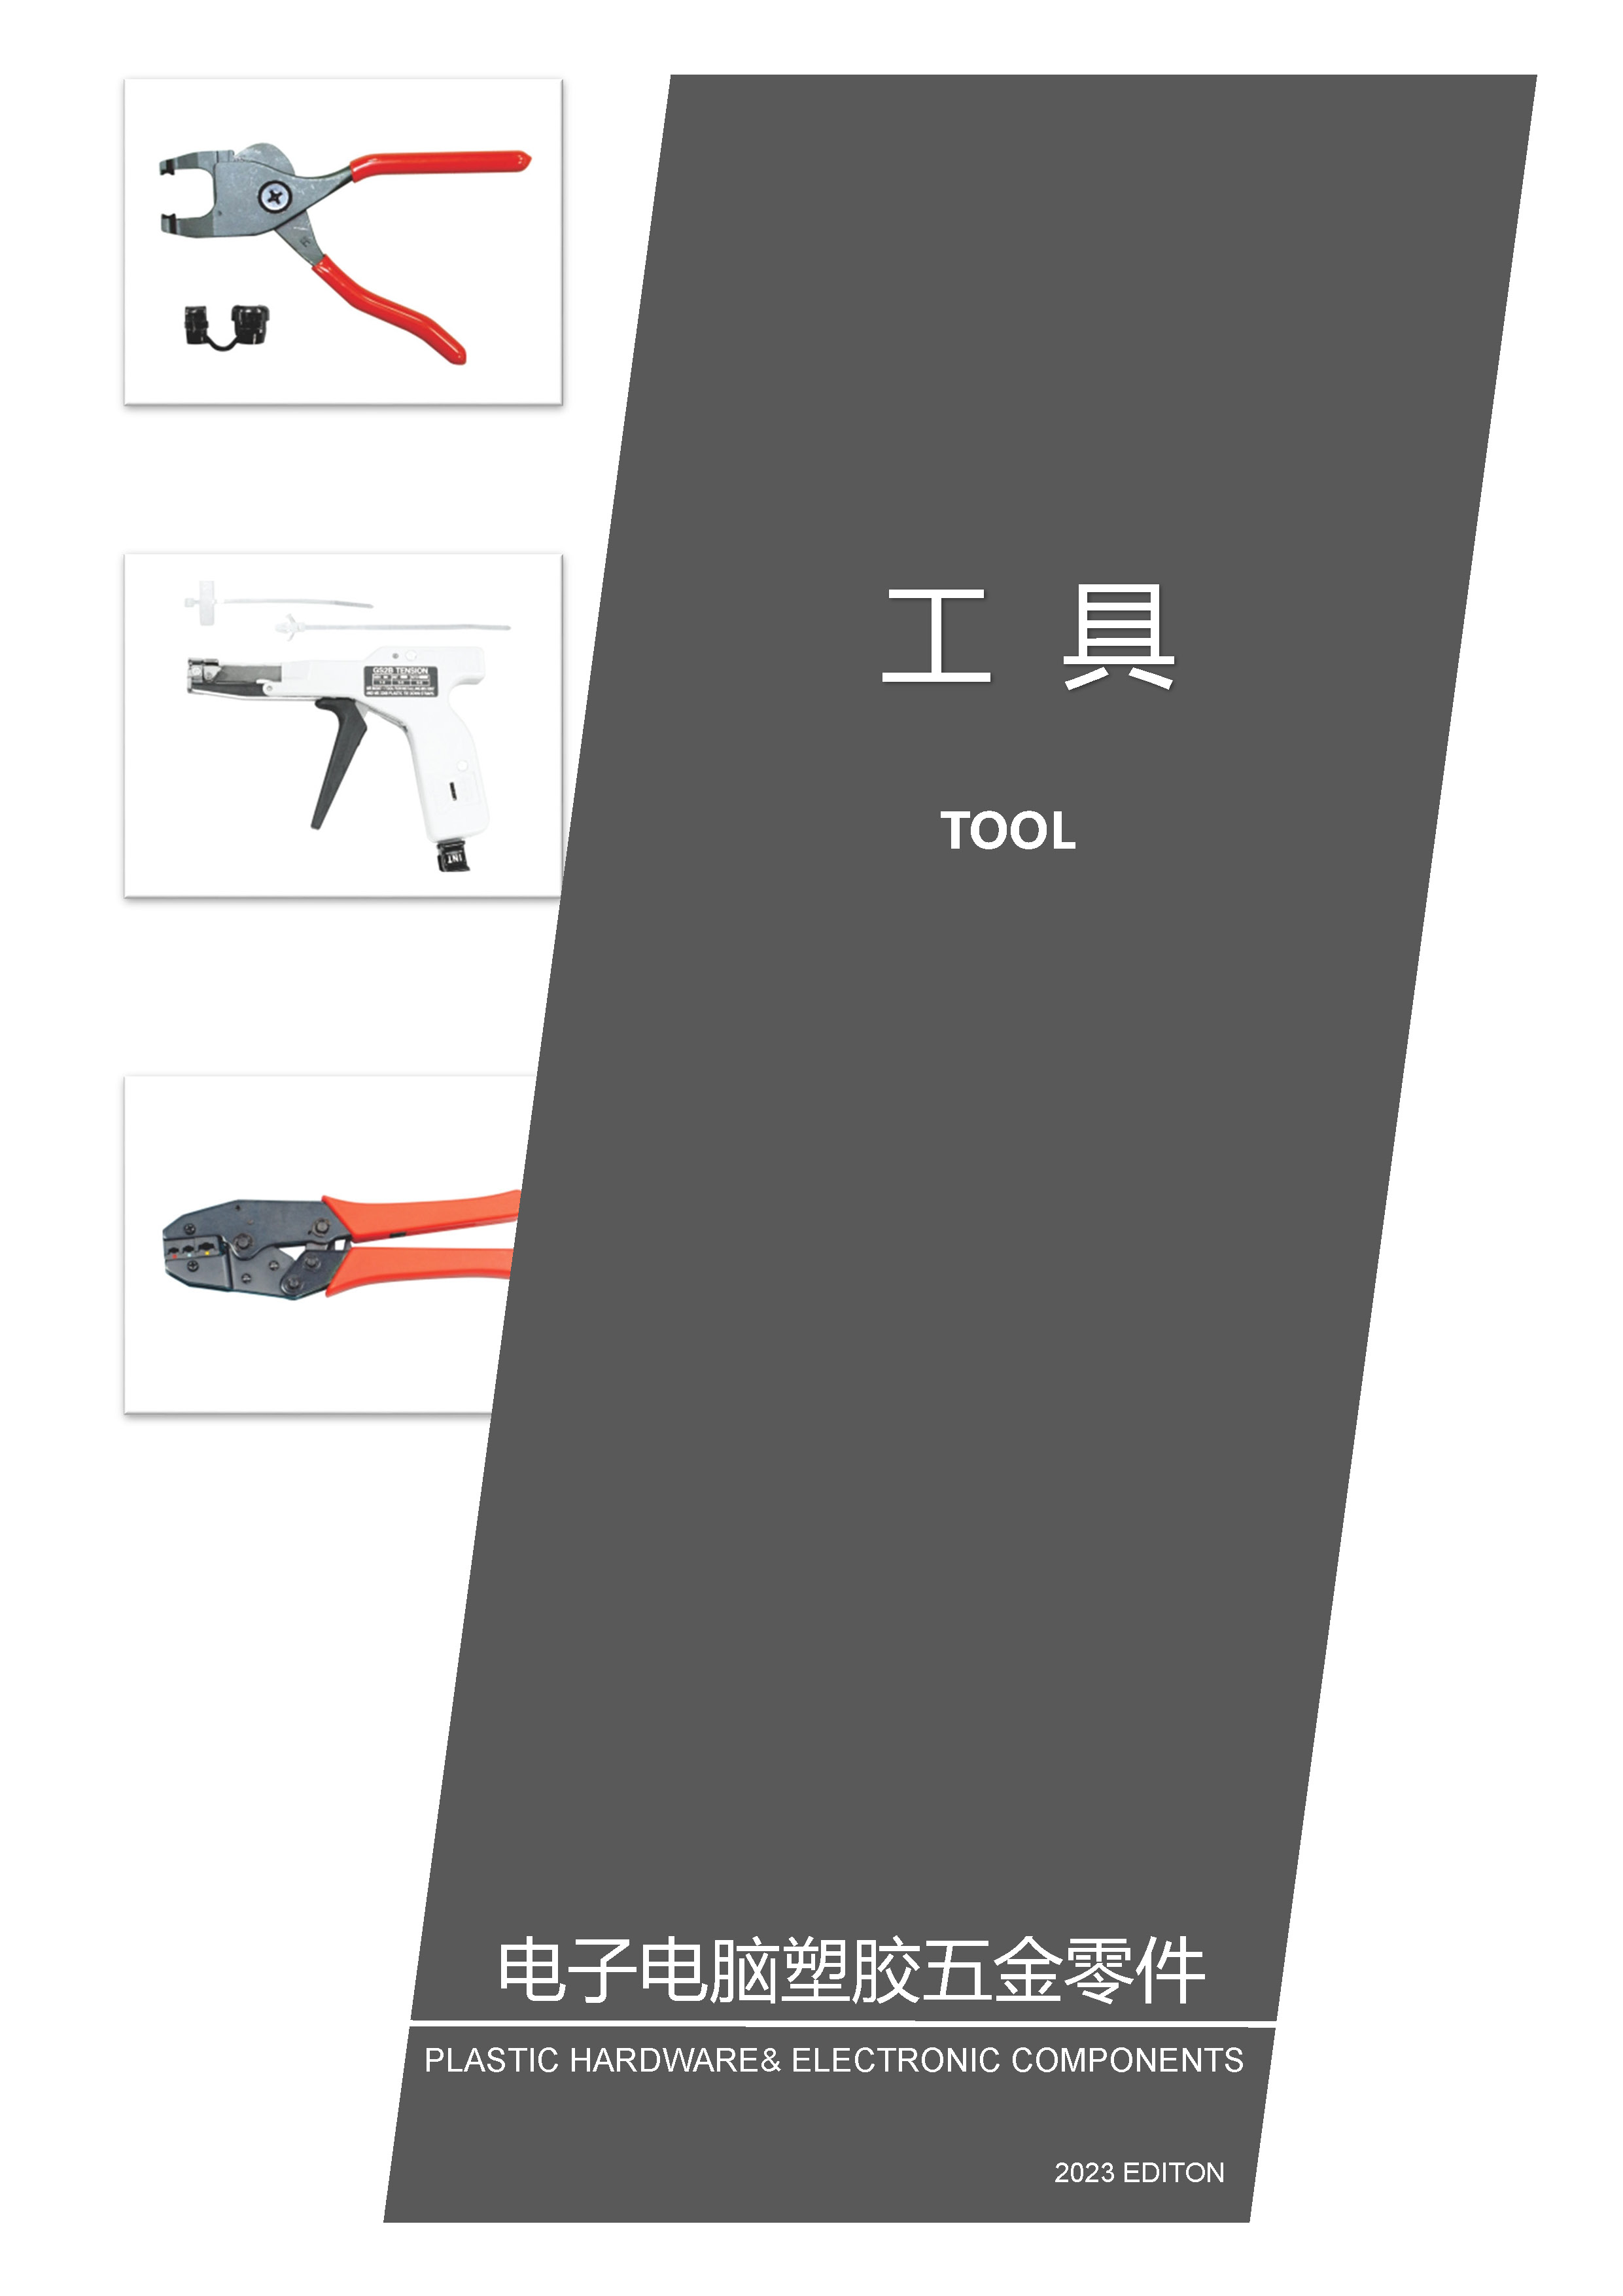 工具|线扣工具|进口束线枪|旗型端子工具|国产束线枪|非绝缘端子工具|绝缘端子工具